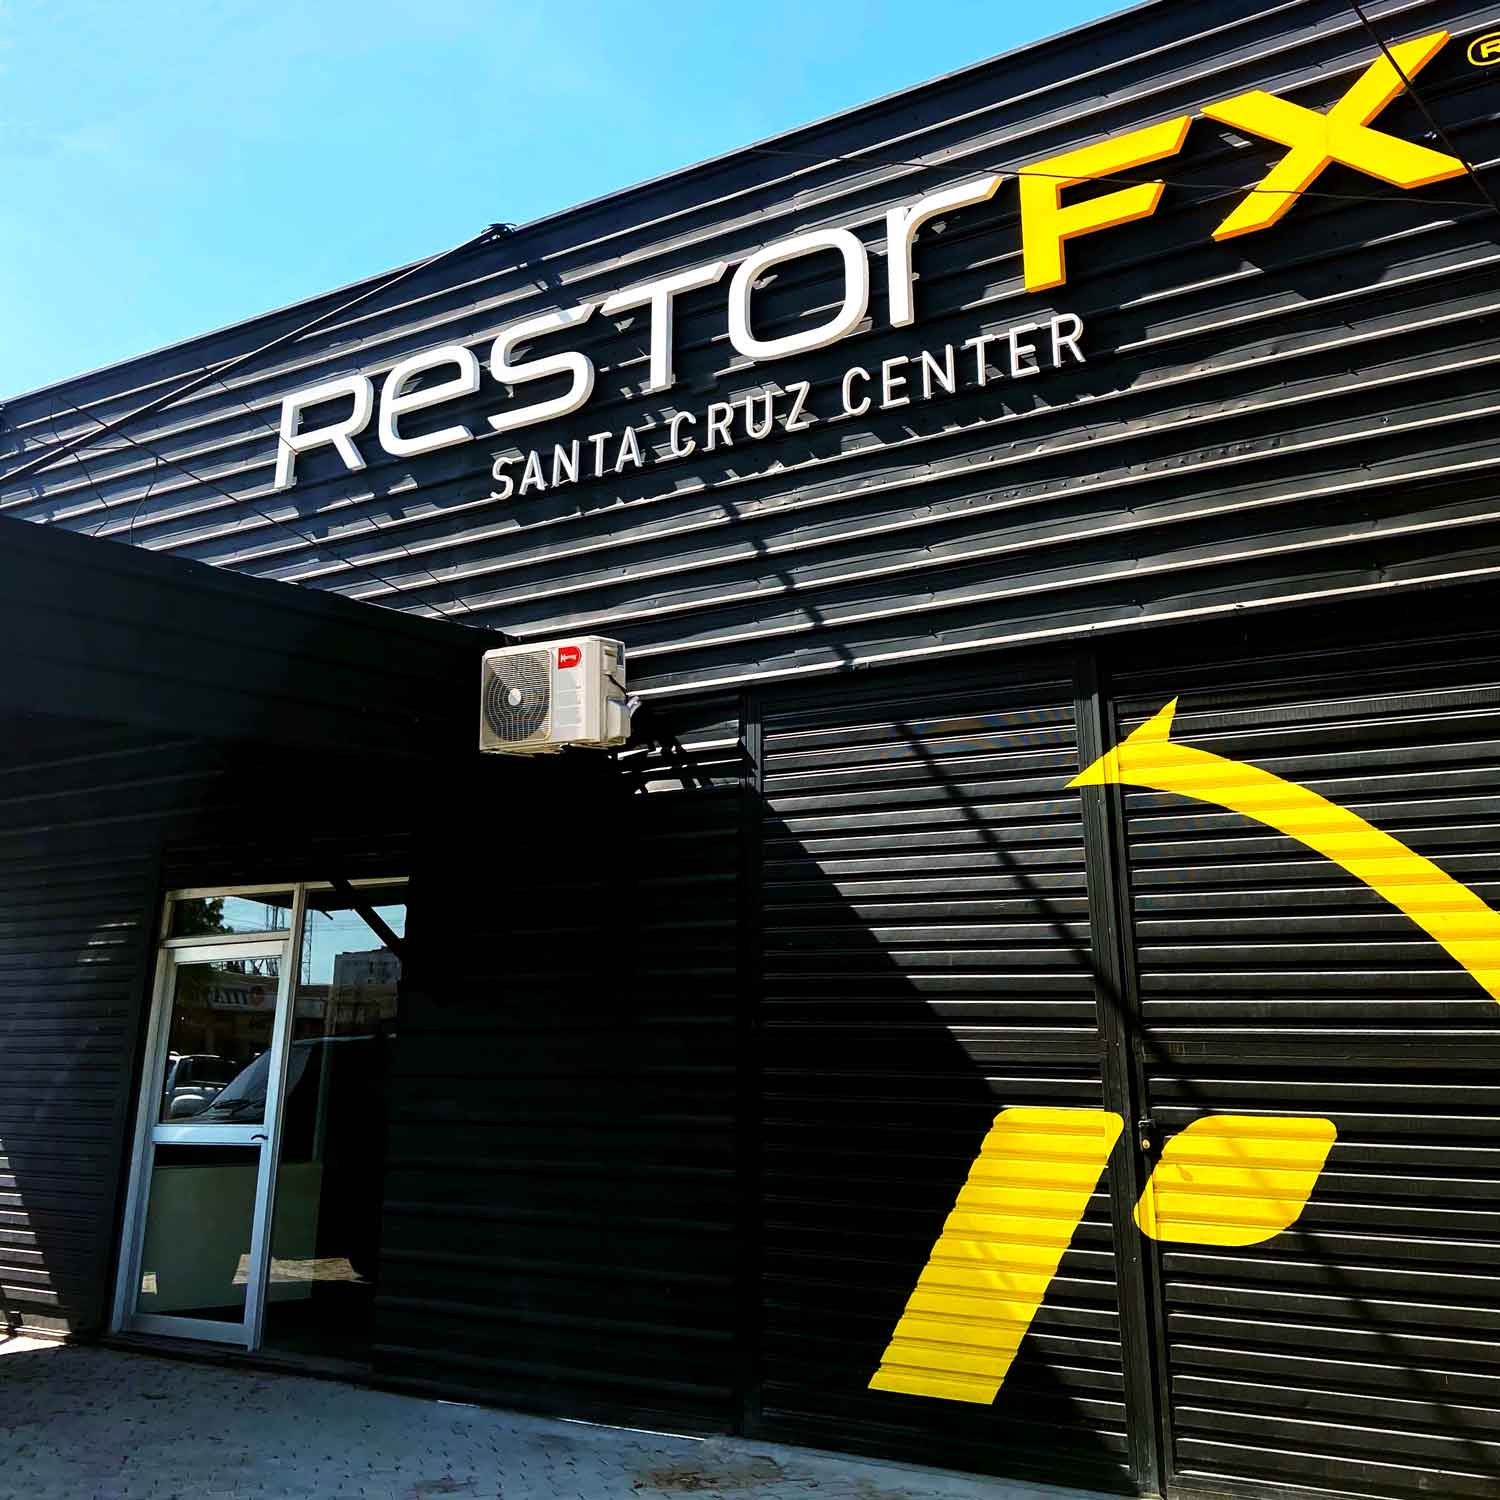 RestorFX Santa Cruz center exterior with branded storefront and blue sky